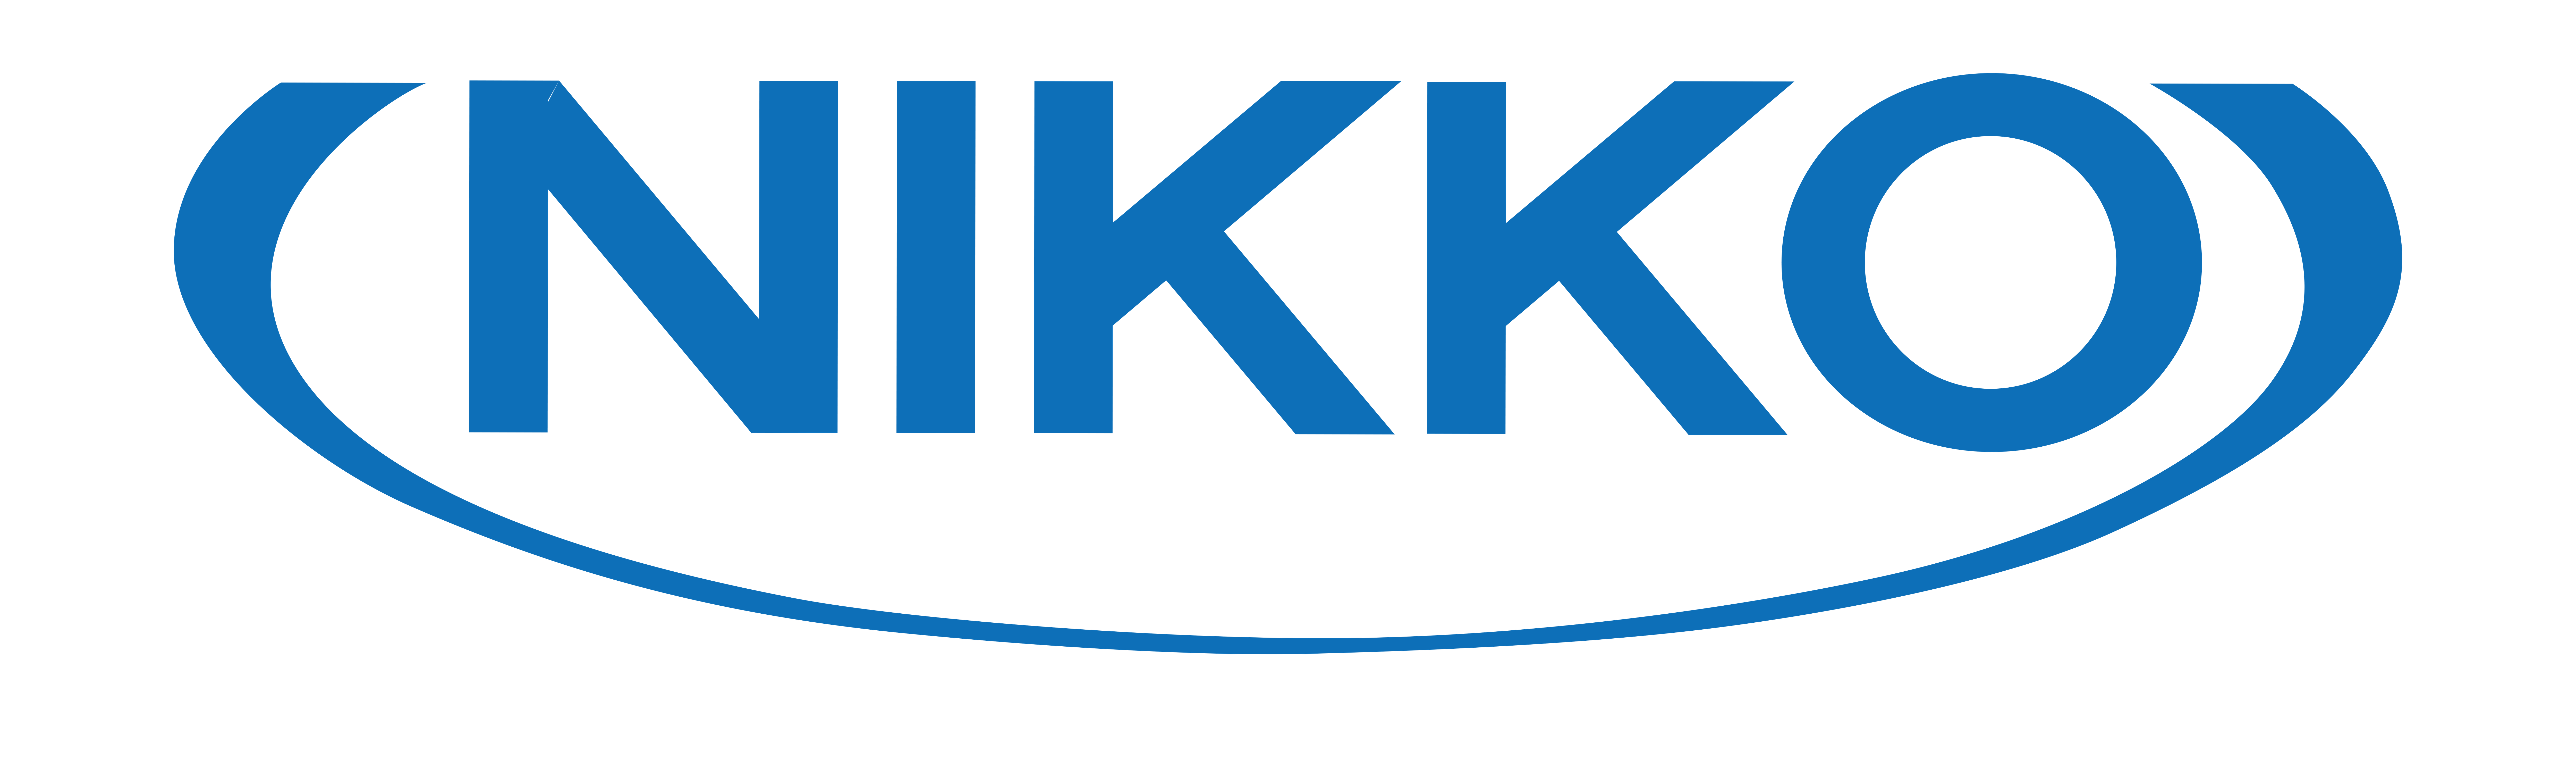 Nikko Empregos